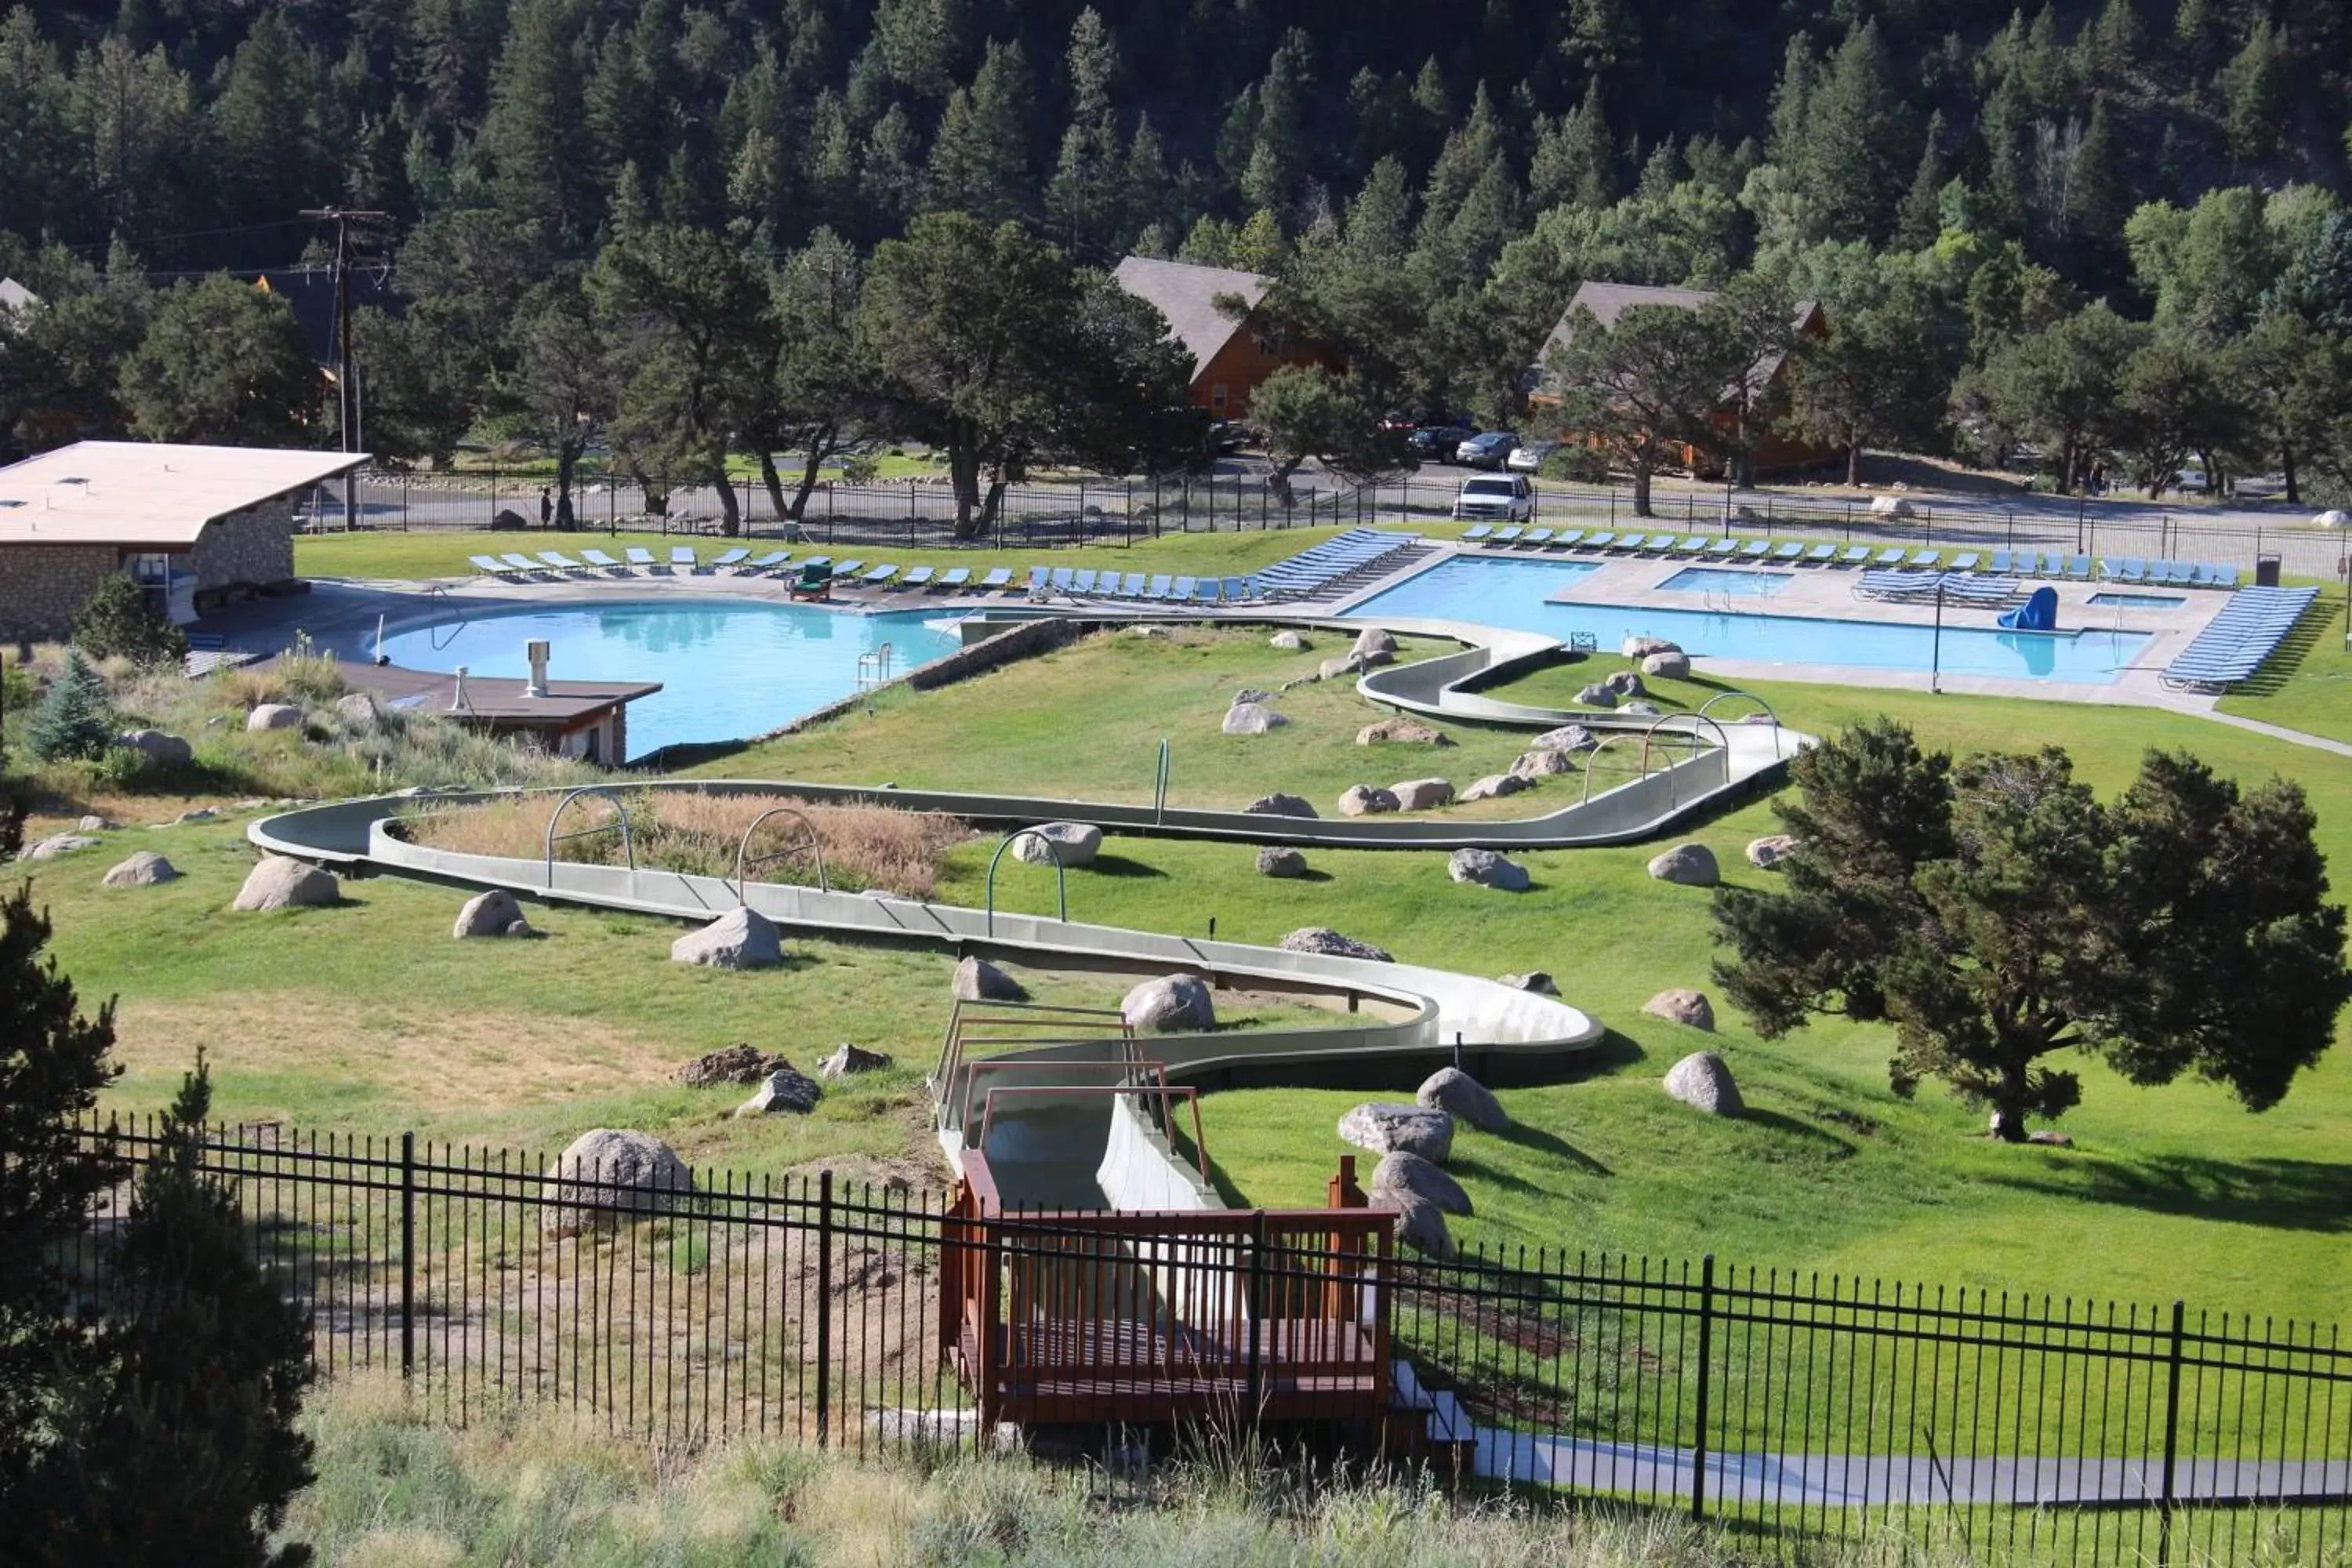 Pool View in Mount Princeton Hot Springs Resort